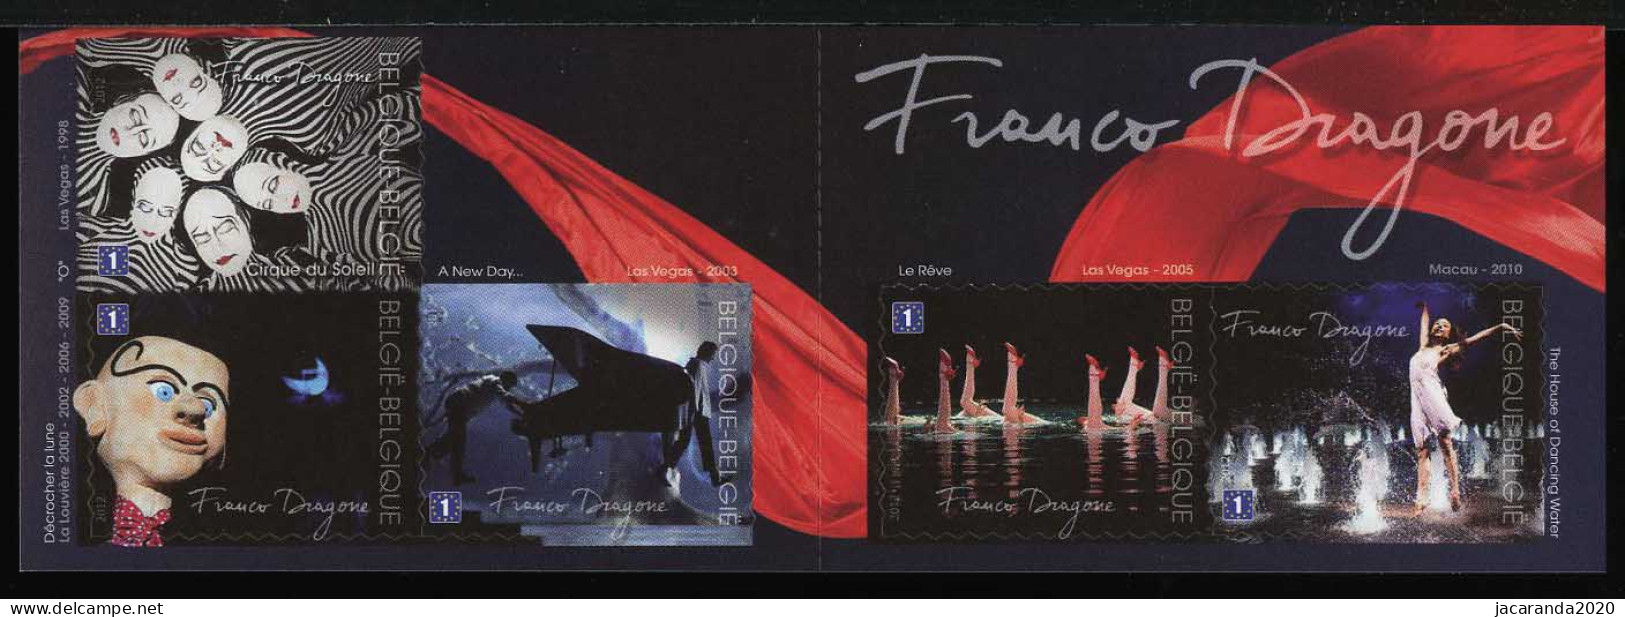 België B127 - Franco Dragone - Cirque Du Soleil - 1E - Zelfklevend - Autocollants - 2012 - 1997-… Validité Permanente [B]